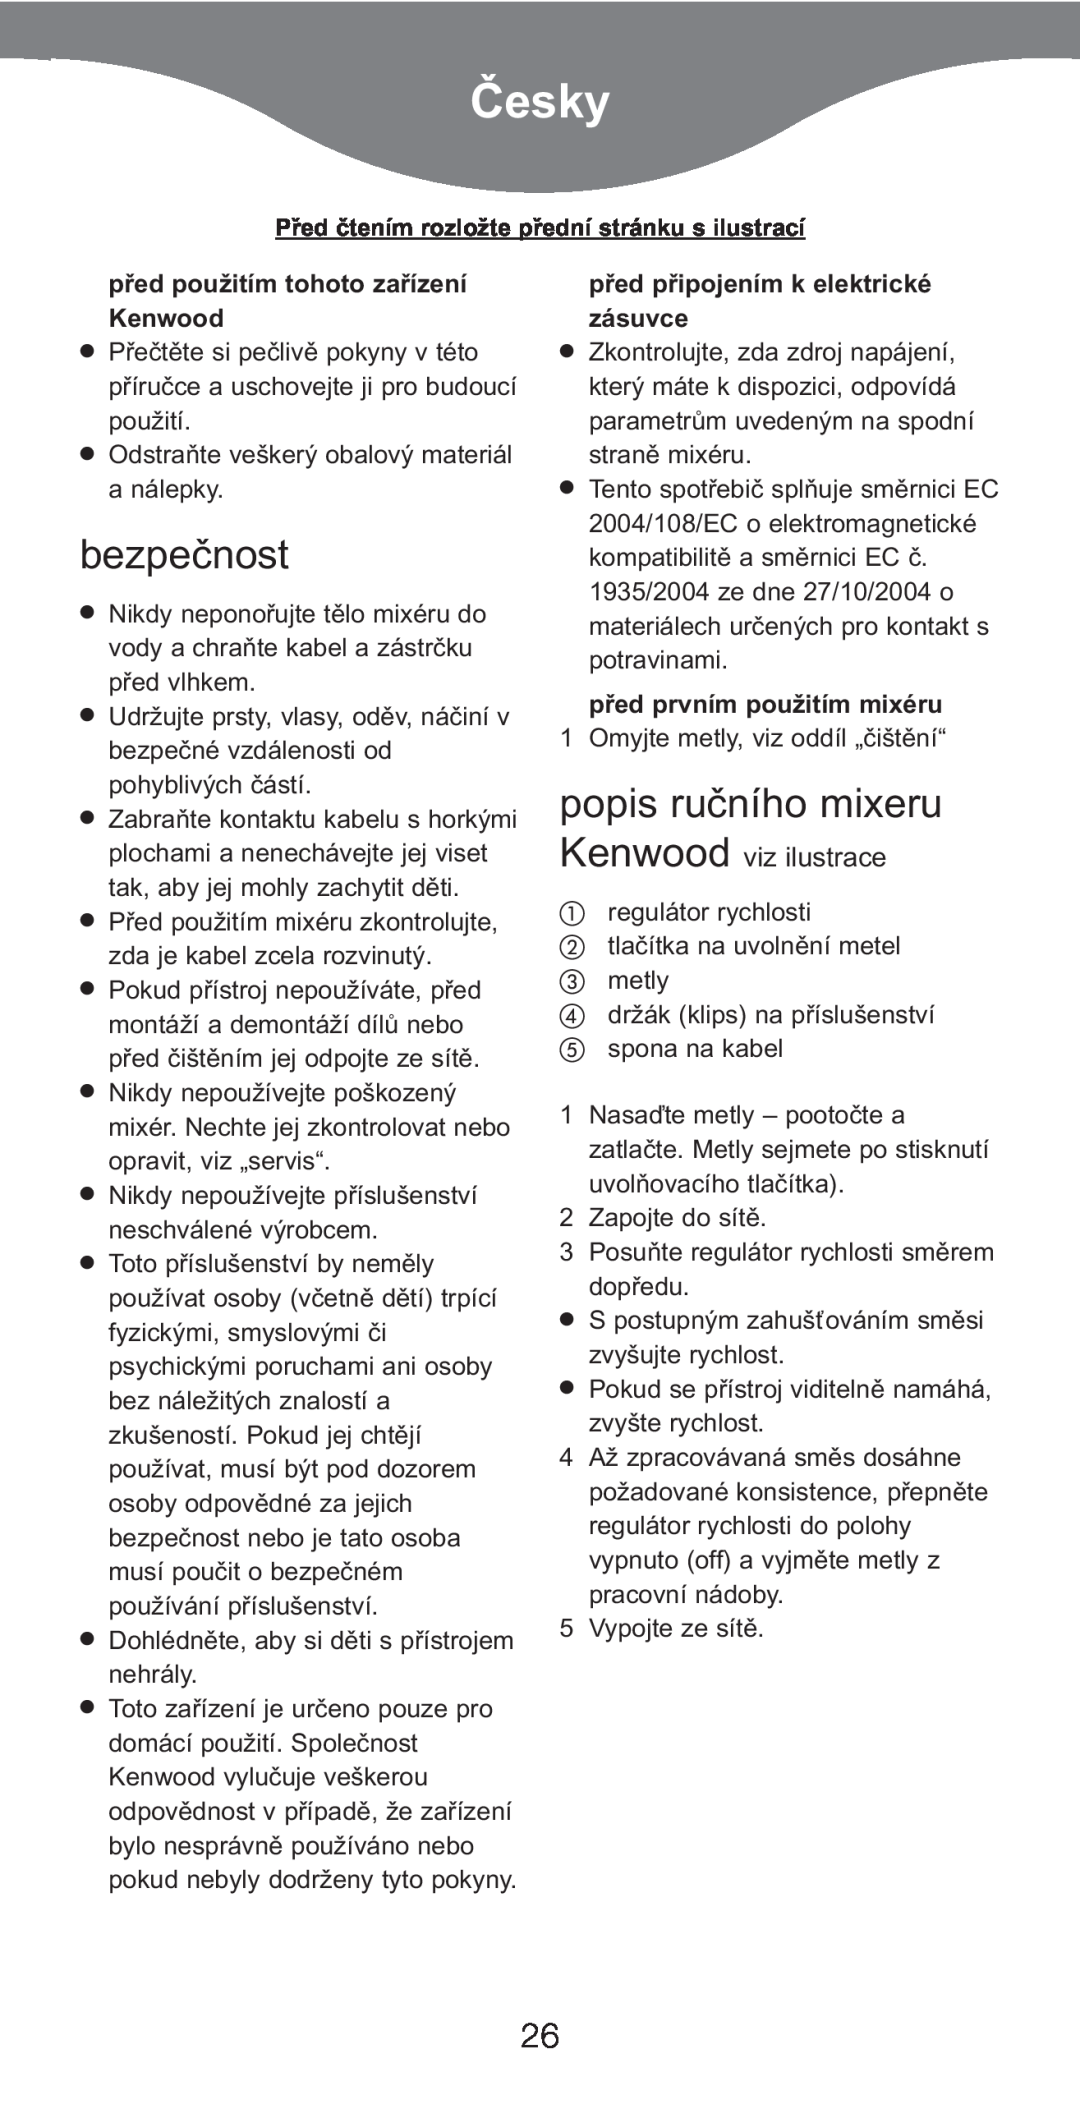 Kenwood HM226, HM220 Ïesky, bezpečnost, popis ručního mixeru, Kenwood viz ilustrace, před použitím tohoto zařízení Kenwood 